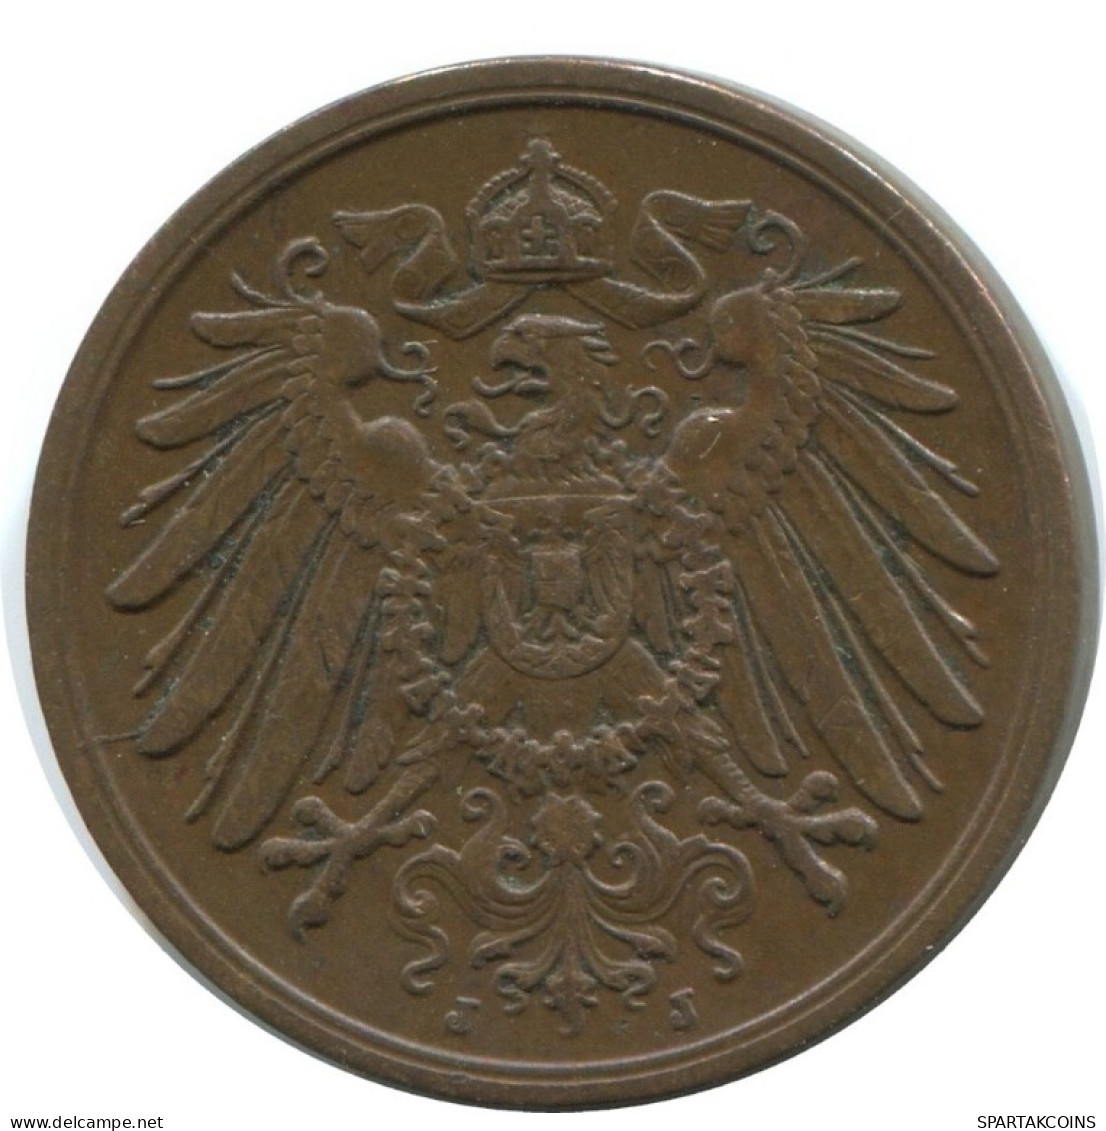 2 PFENNIG 1912 J GERMANY Coin #AD478.9.U.A - 2 Pfennig